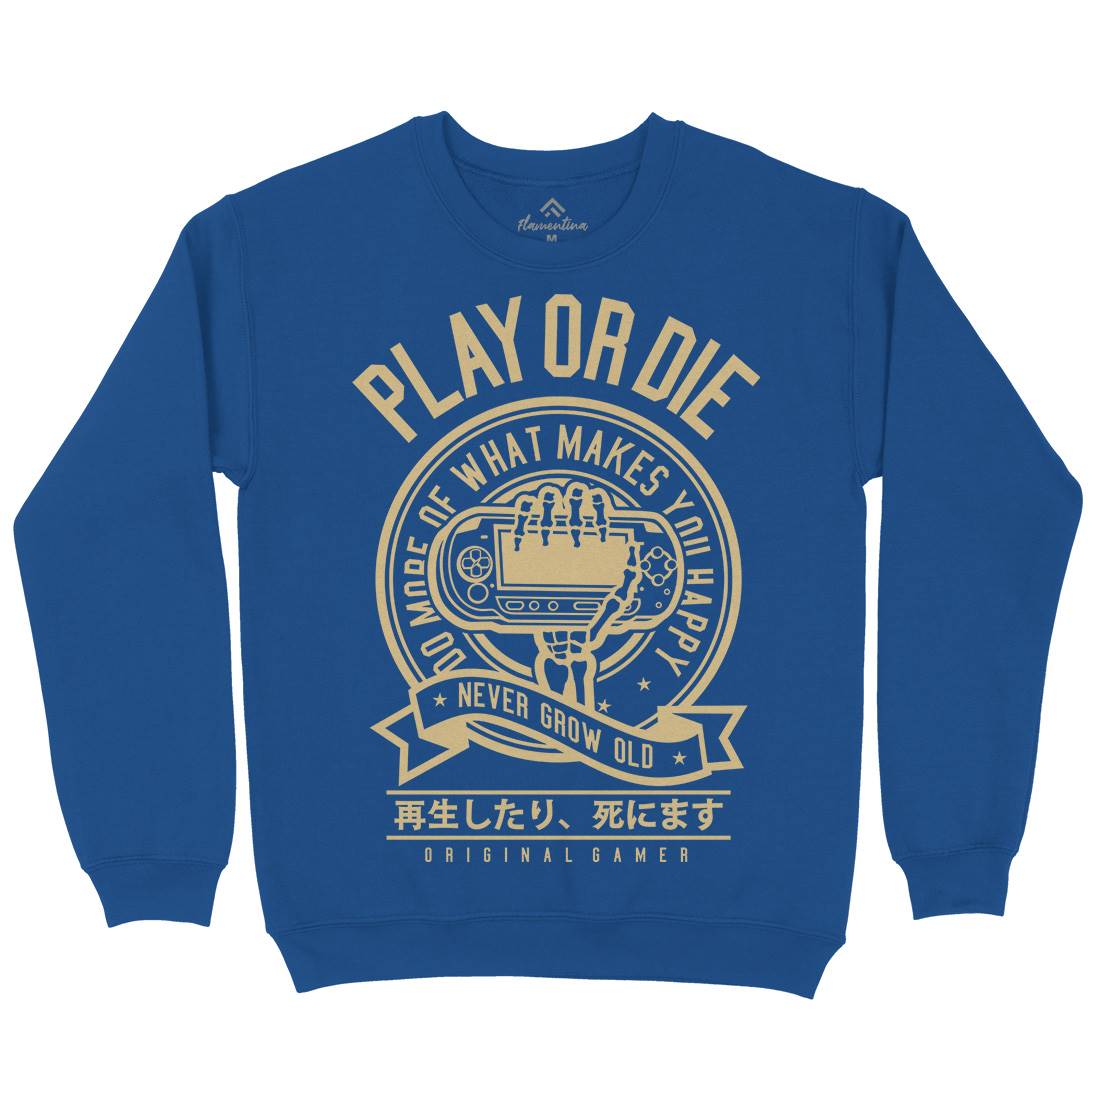 Play Or Die Kids Crew Neck Sweatshirt Geek A262